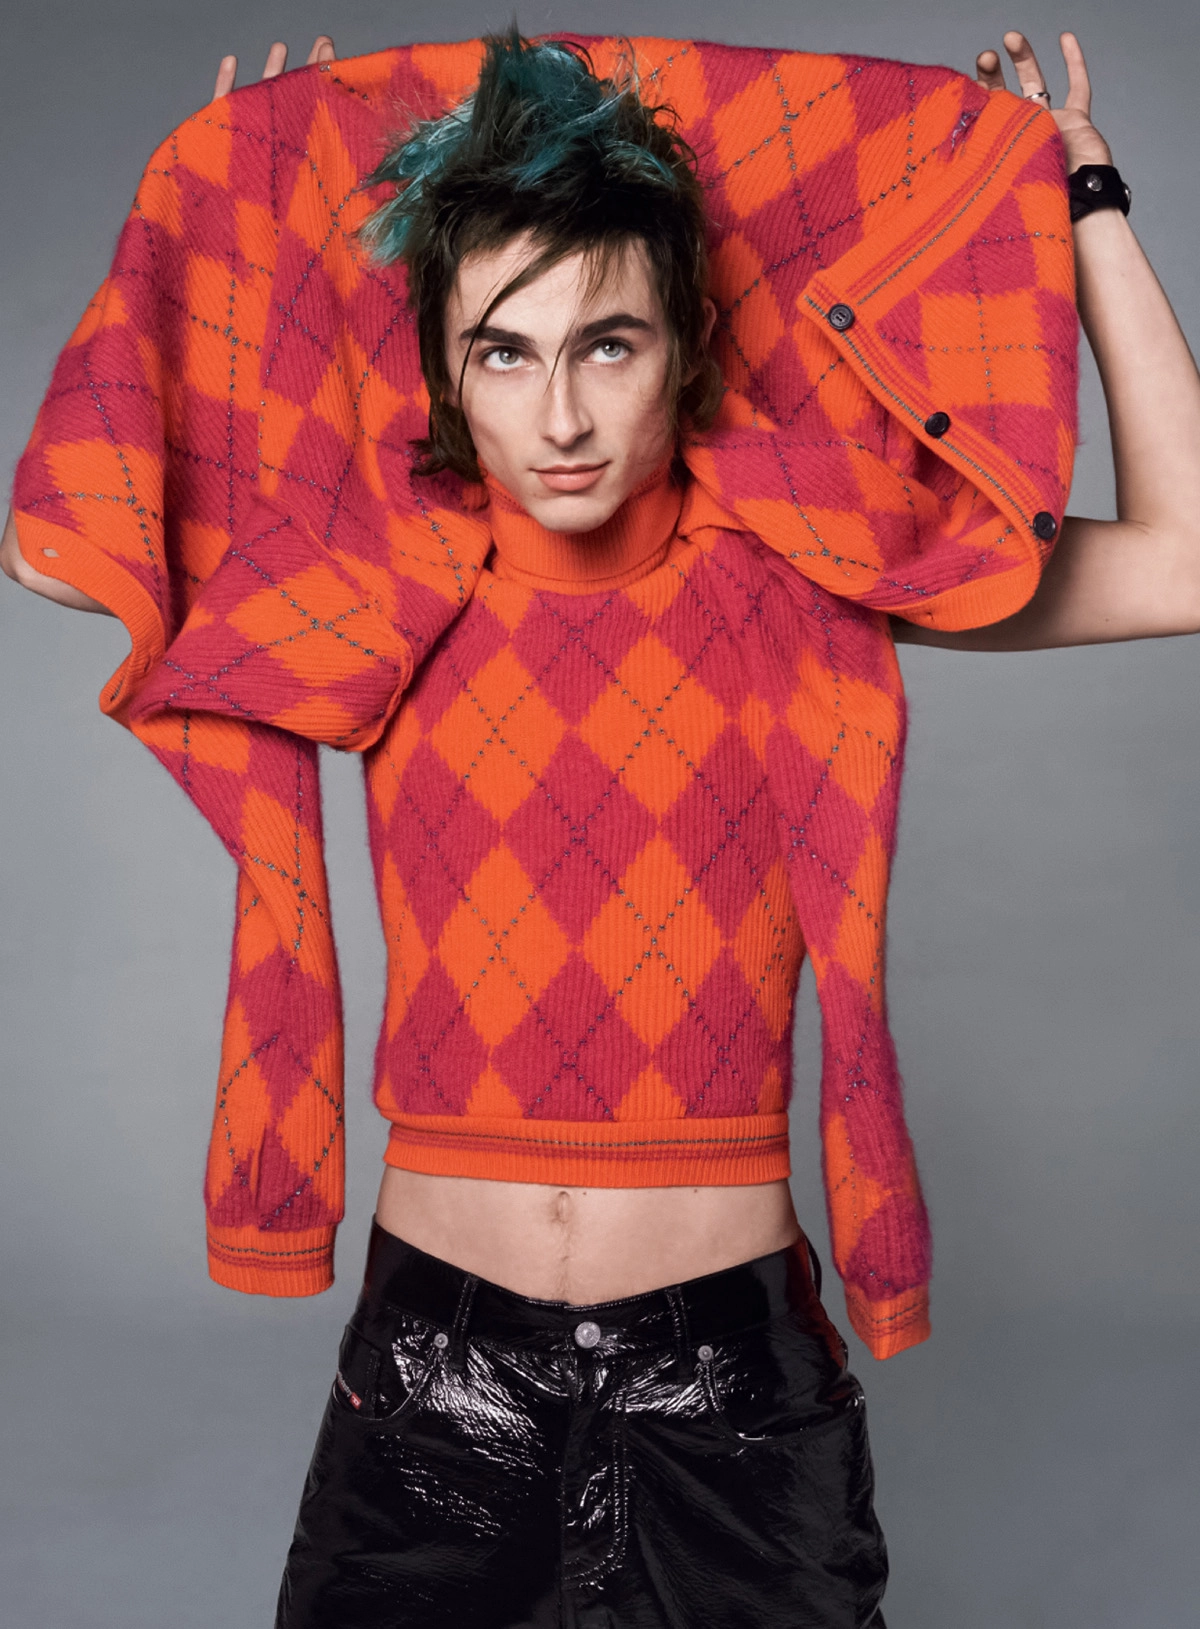 Timothée Chalamet covers British Vogue October 2022 by Steven Meisel